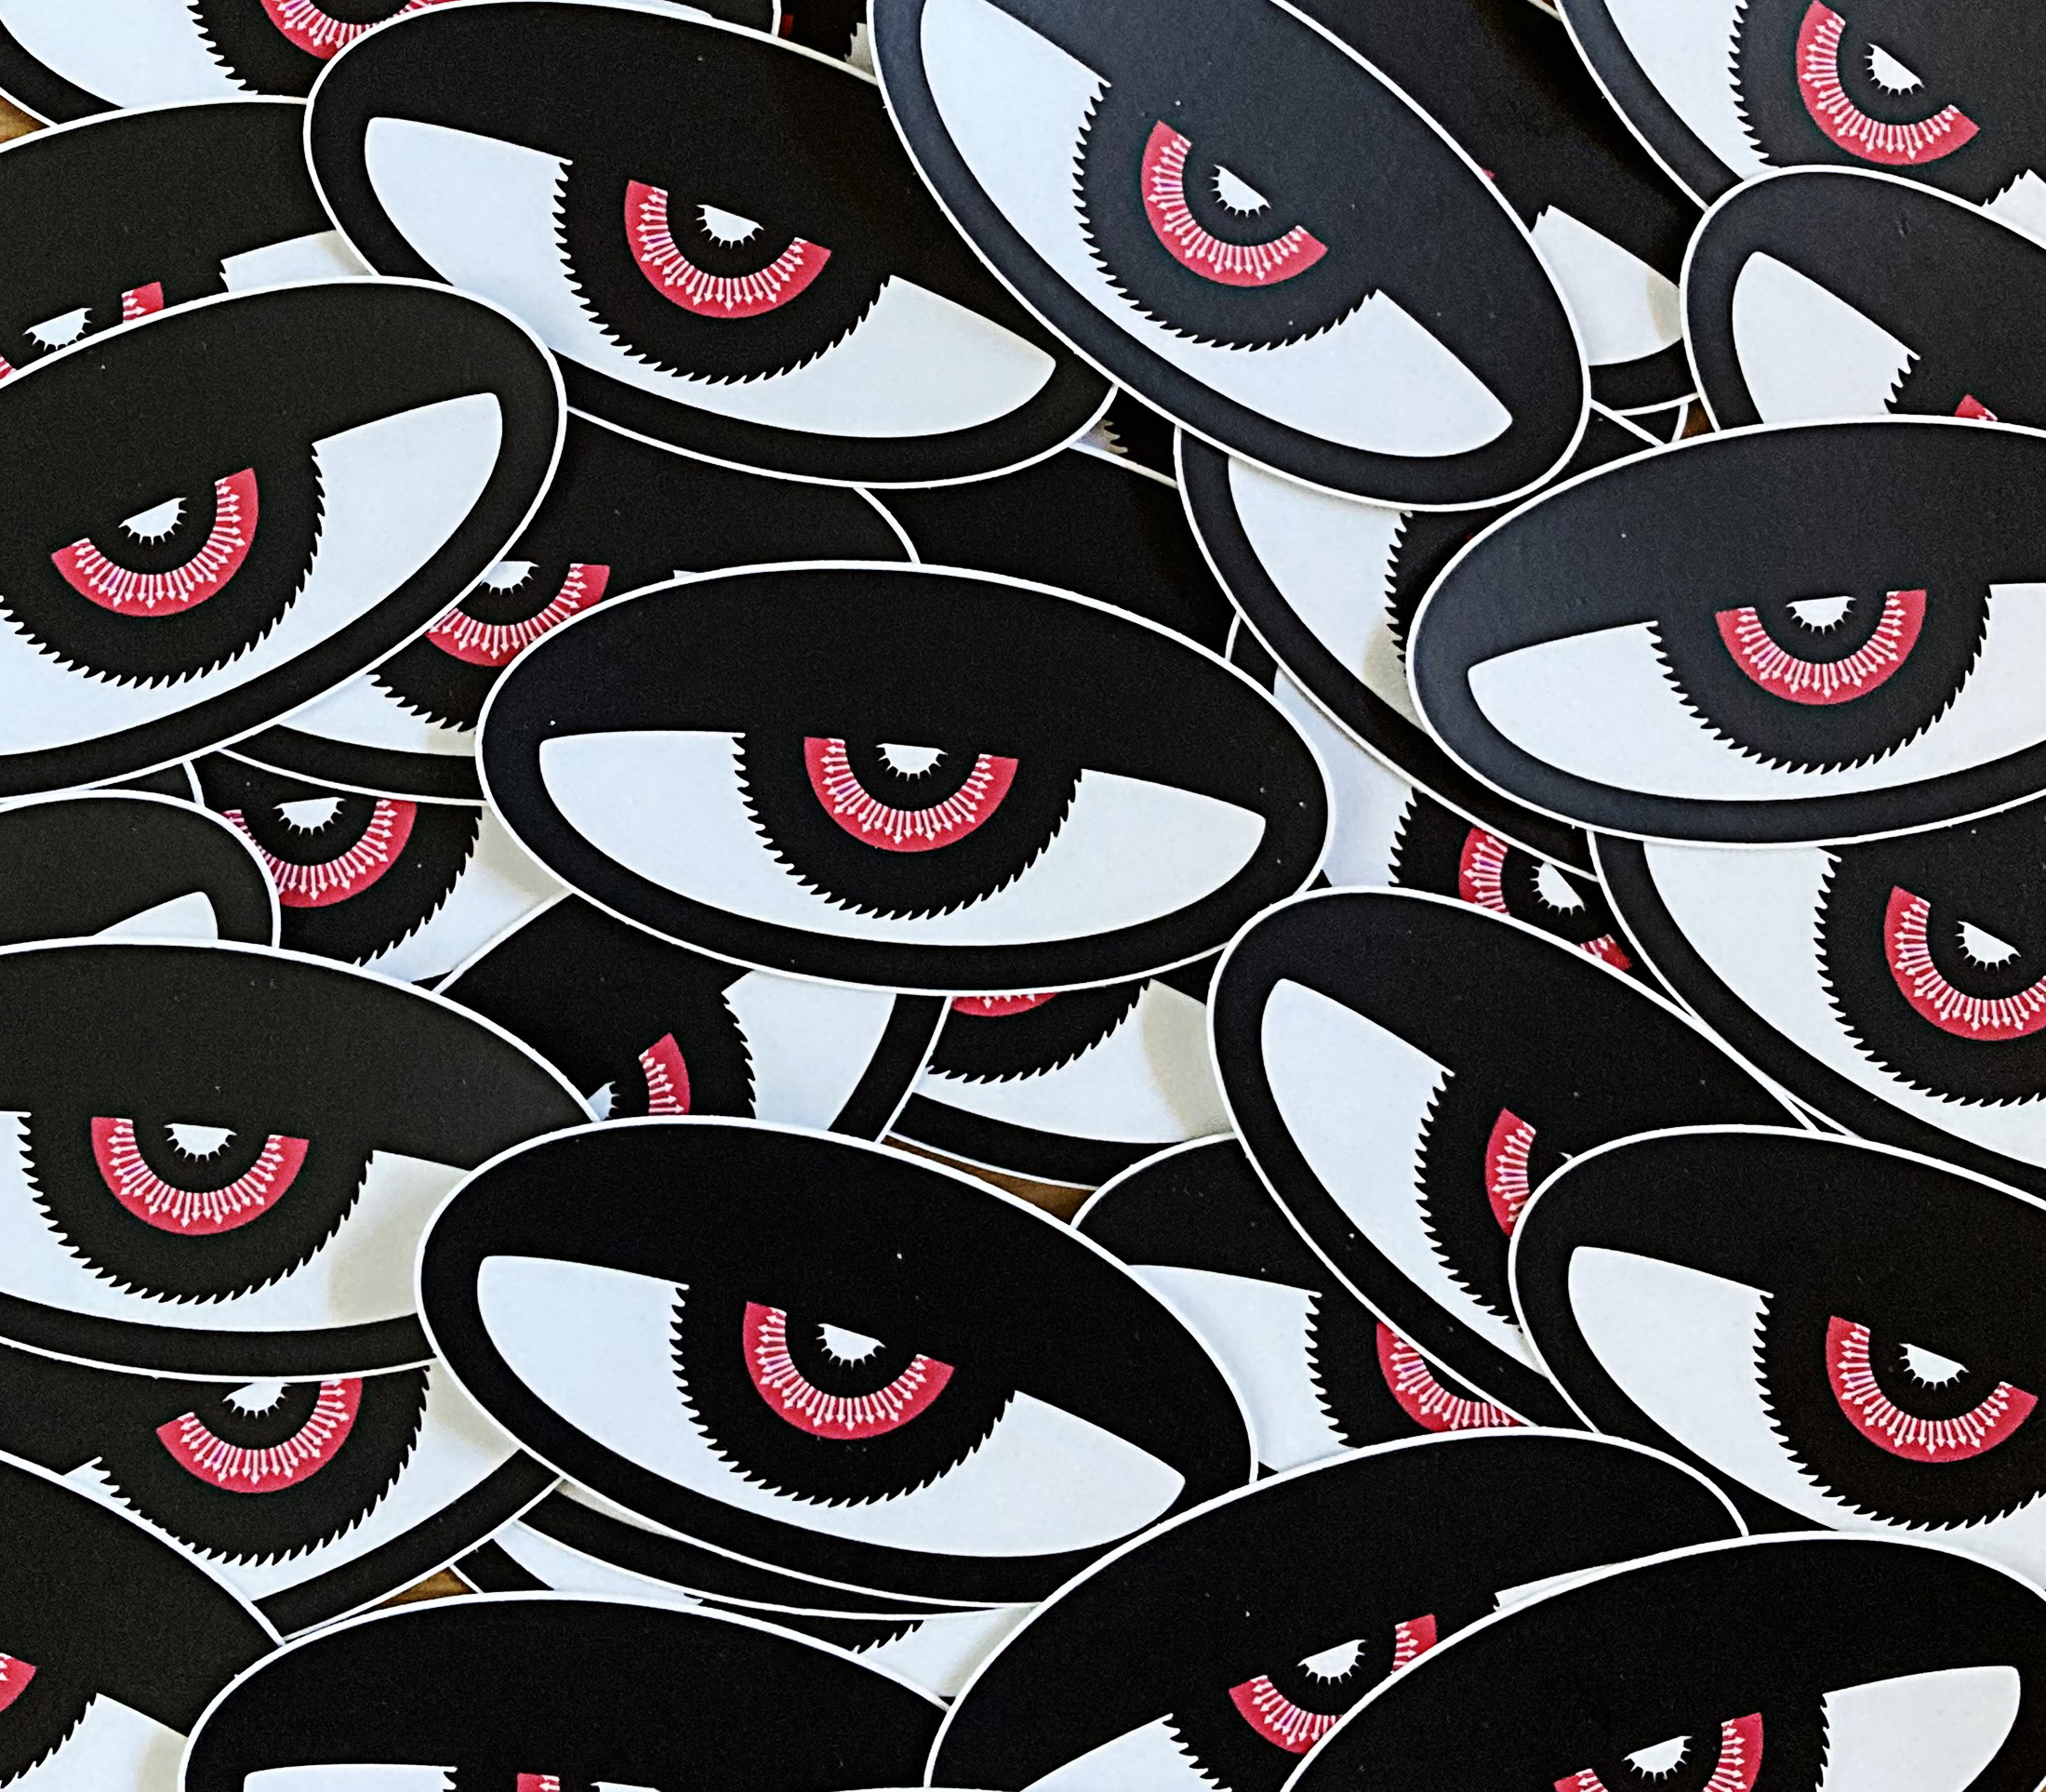 Evil Eye Designs, Jarred Elrod, Greece Travel, stickers